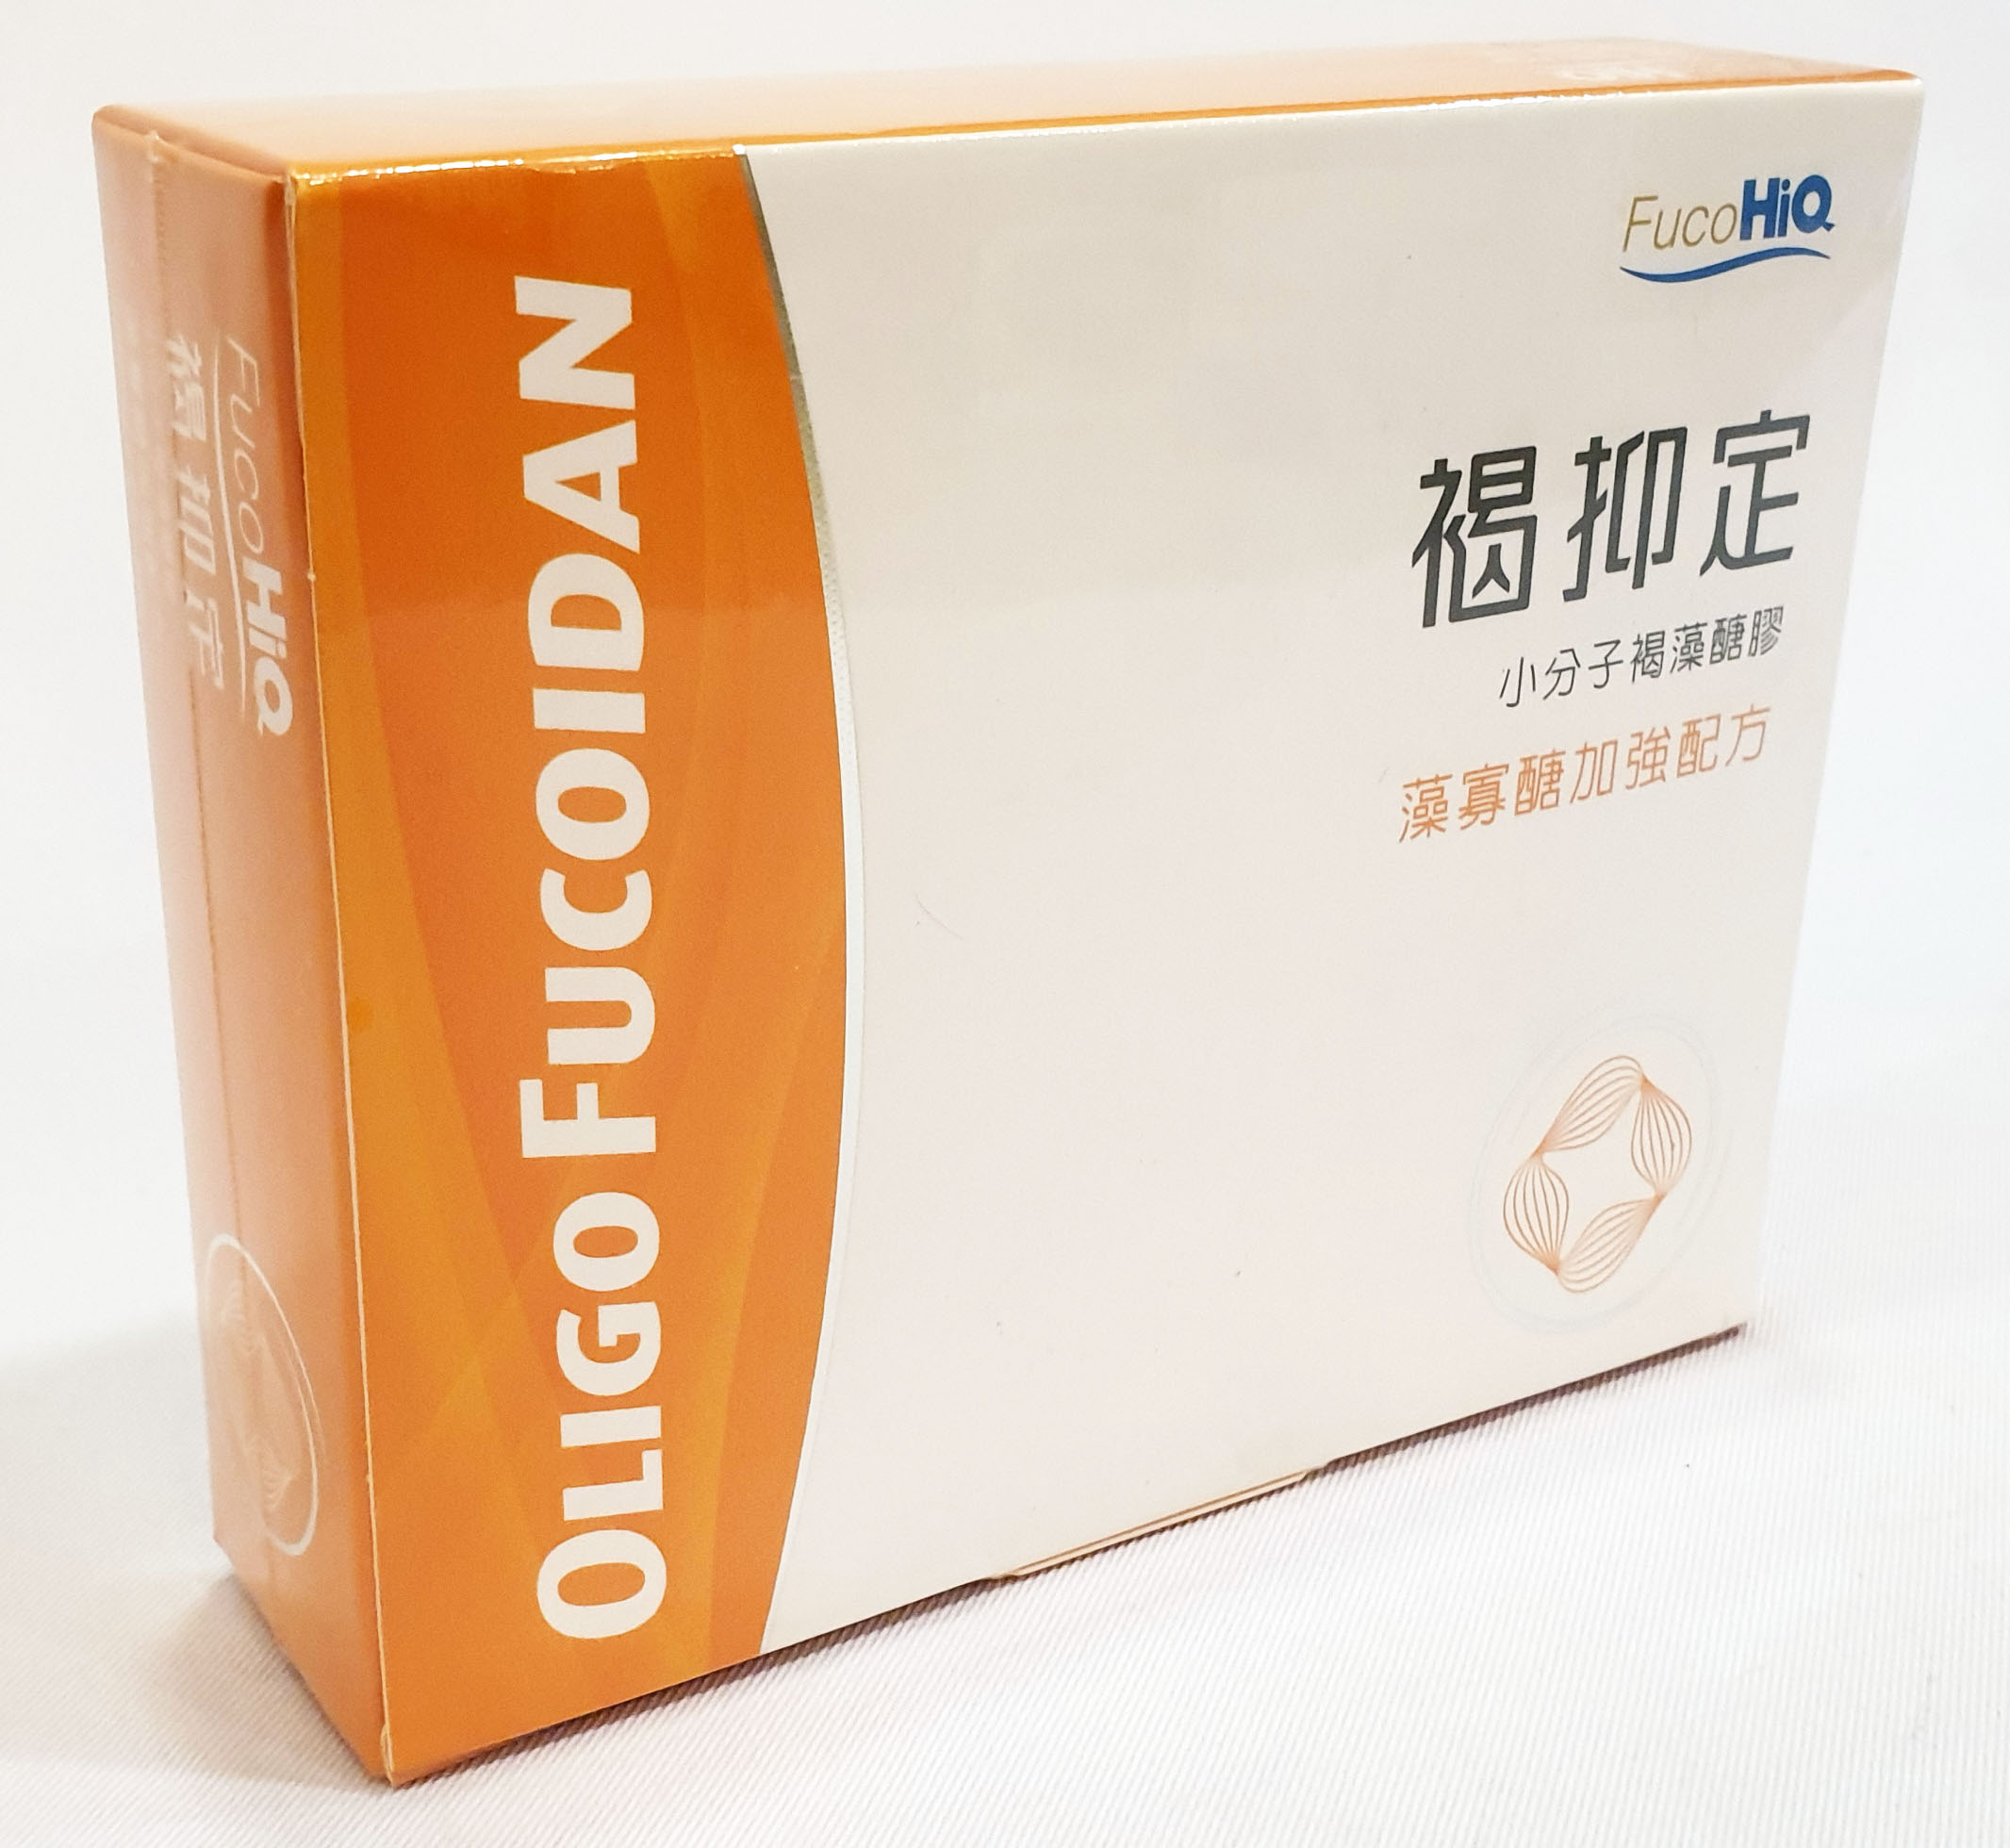 中華海洋 Hi-Q 褐抑定 藻寡糖加強配方 褐藻醣膠 60粒/盒 (保健食品/台灣製造)